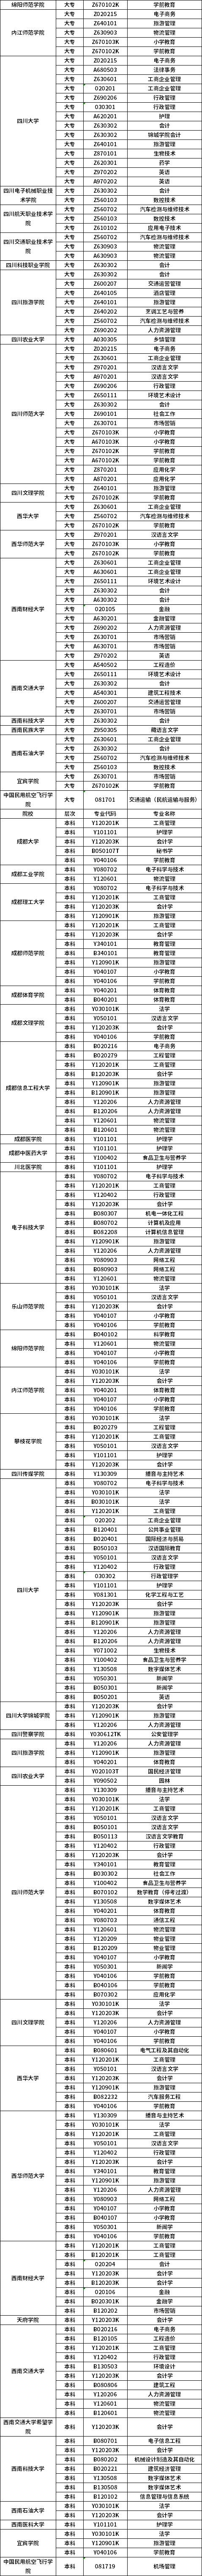 2021年四川自考专业一览表